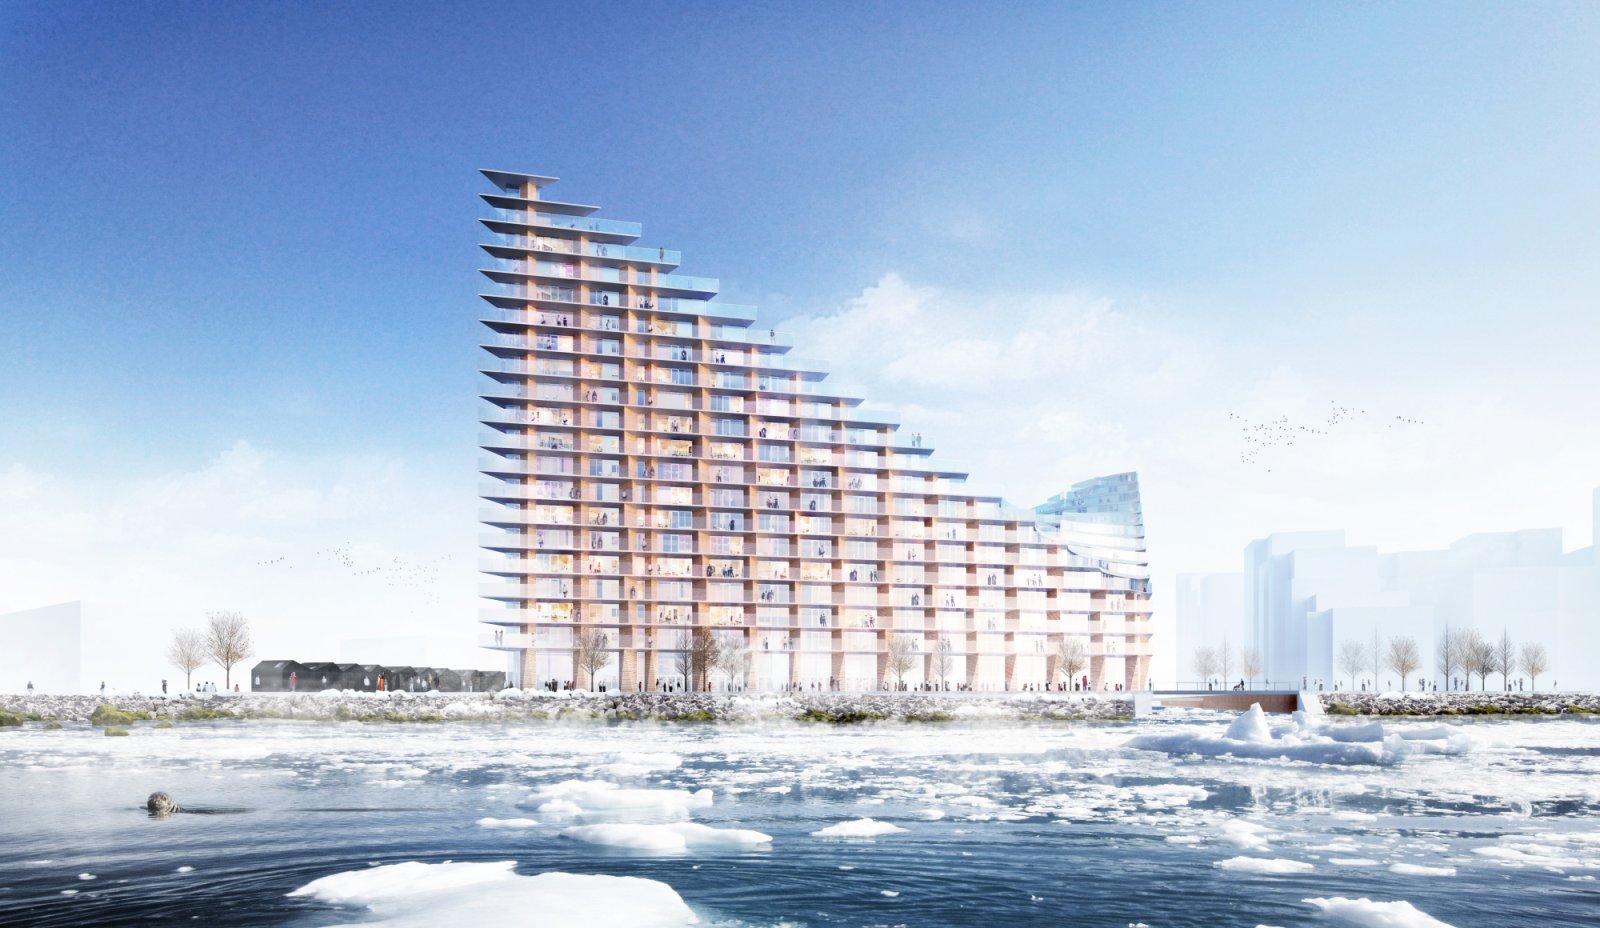 new urban development of Aarhus